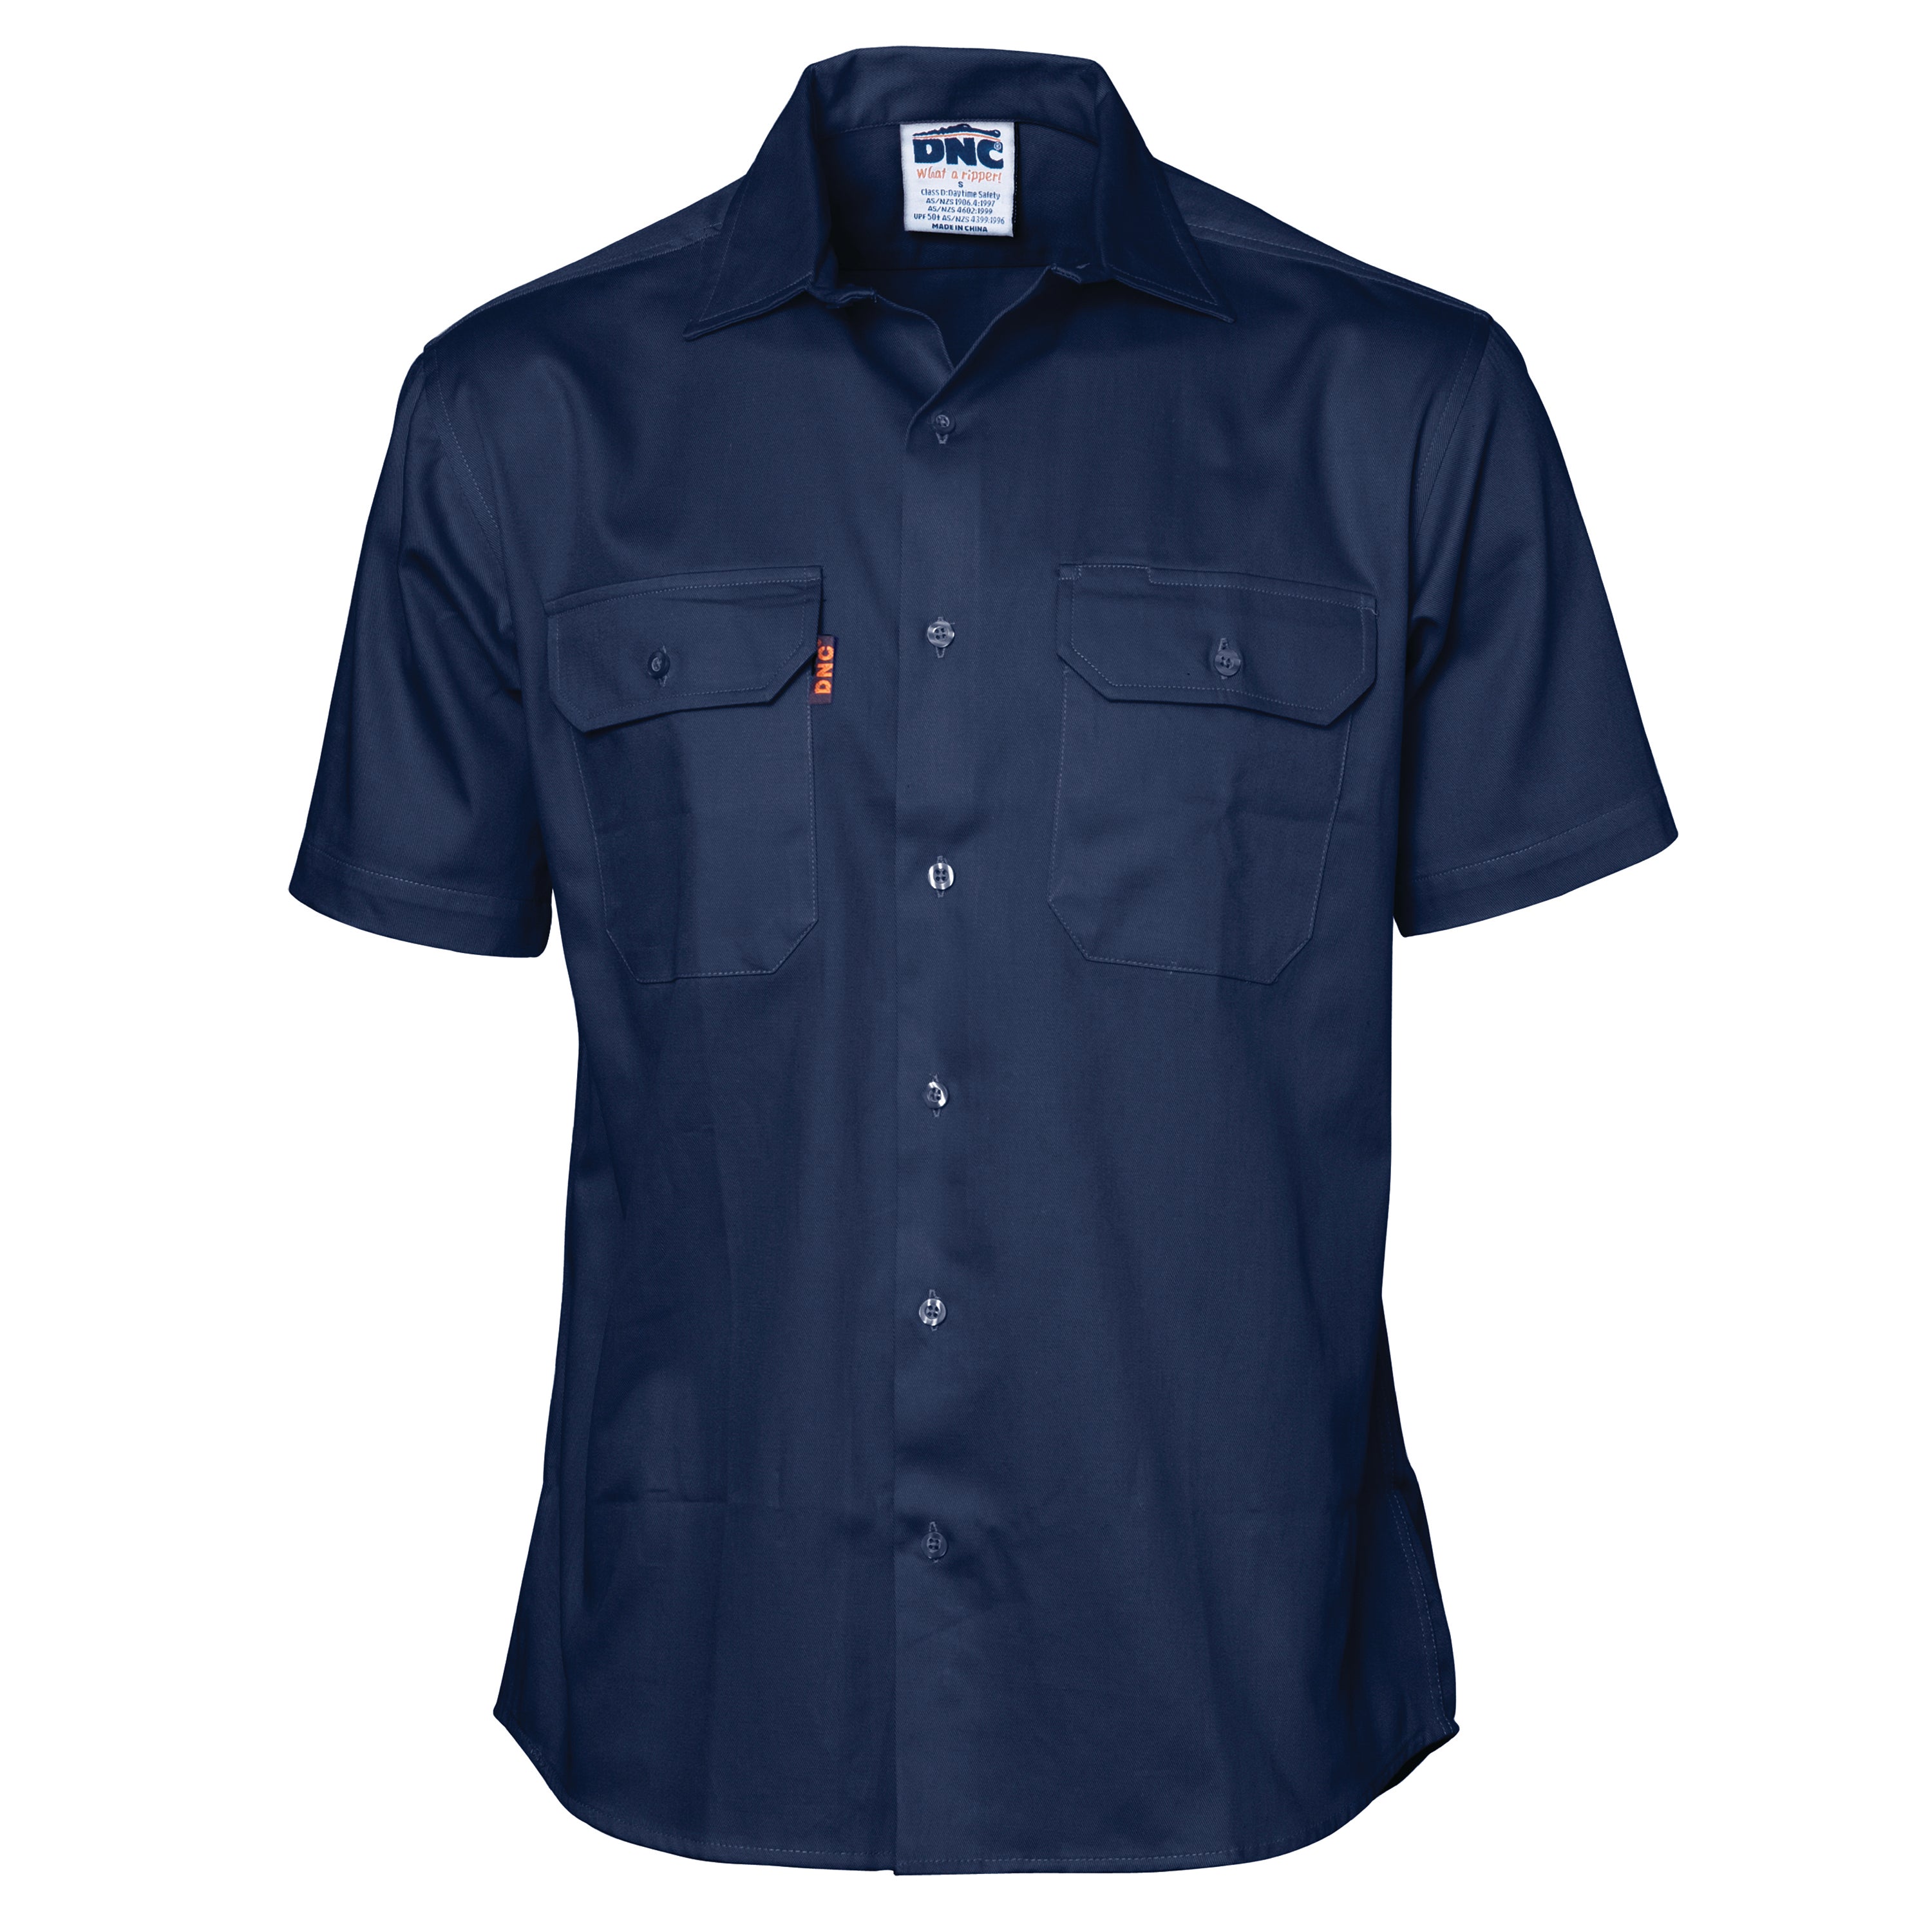 DNC 3207 Cool-Breeze Work Shirt Short-Sleeve